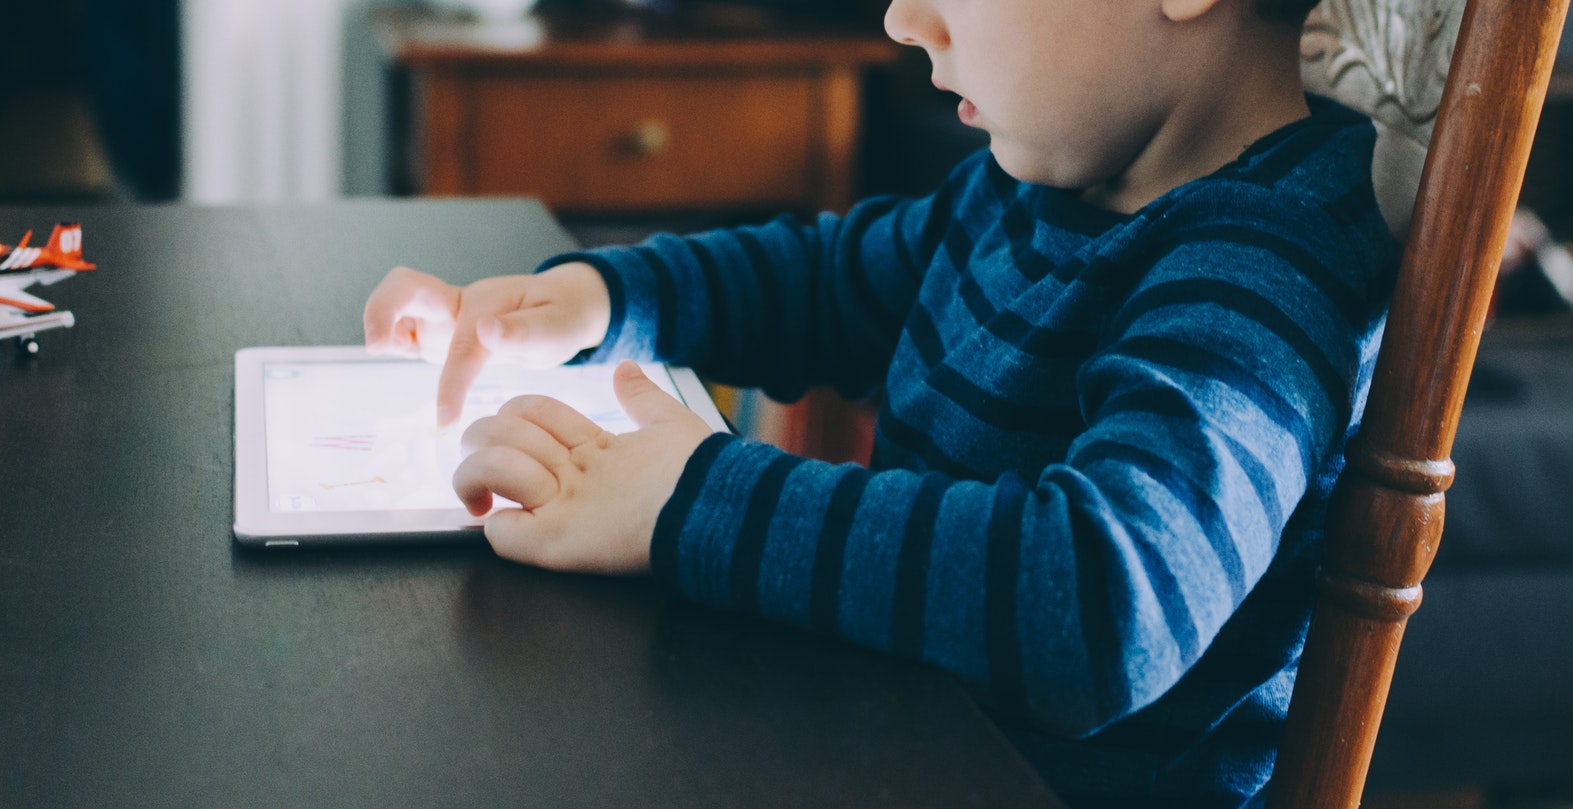 iPad-gebruik-kinderen-beperkt-veilig-puurvangeluk